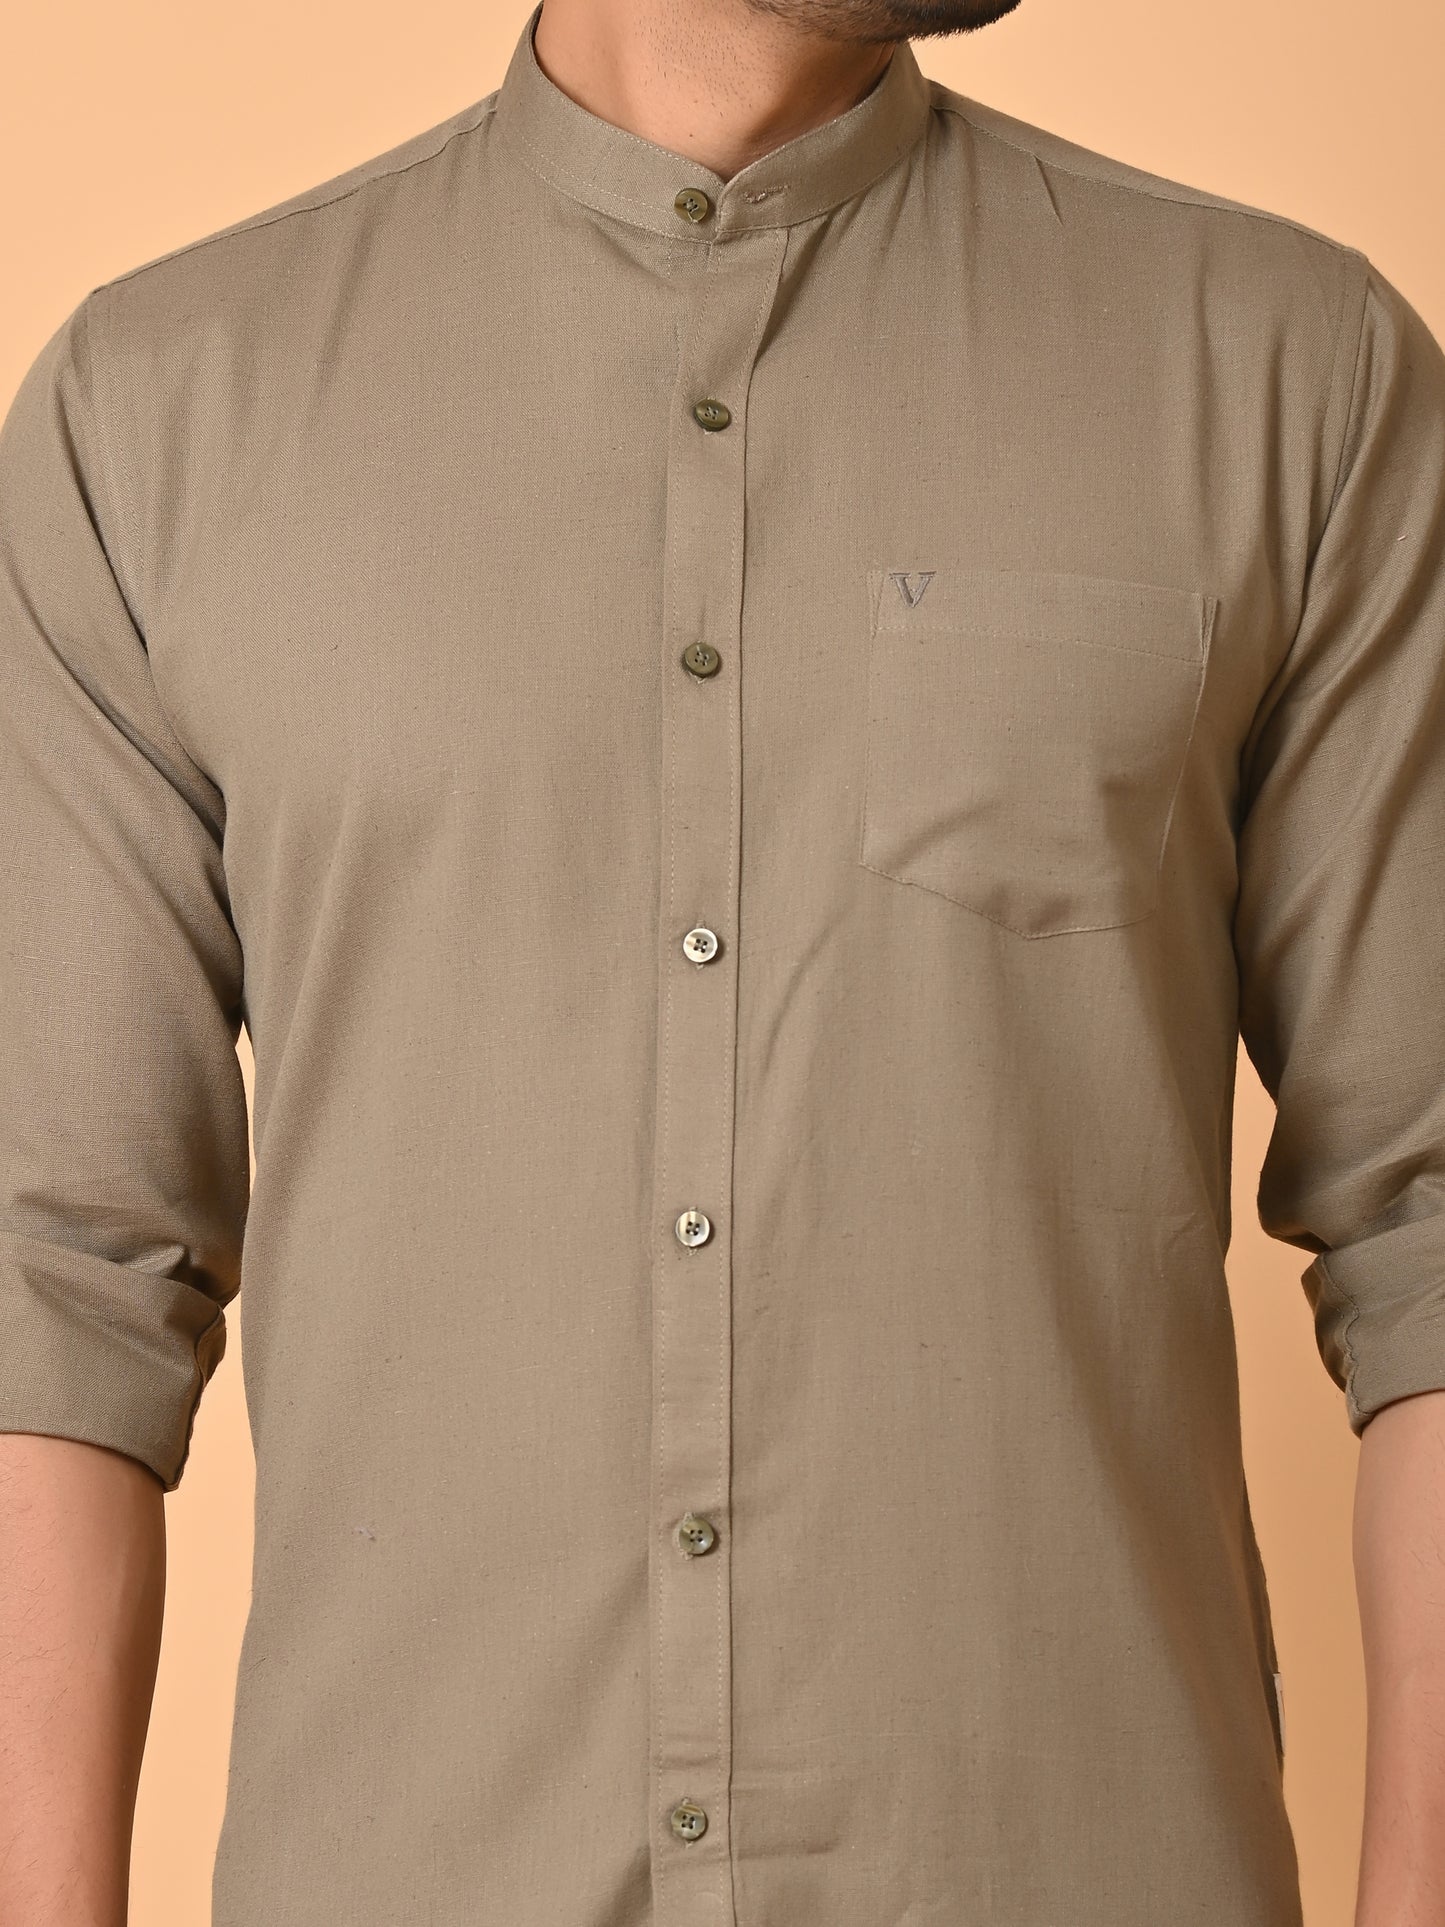 VJR Light Brown Solid Shirt